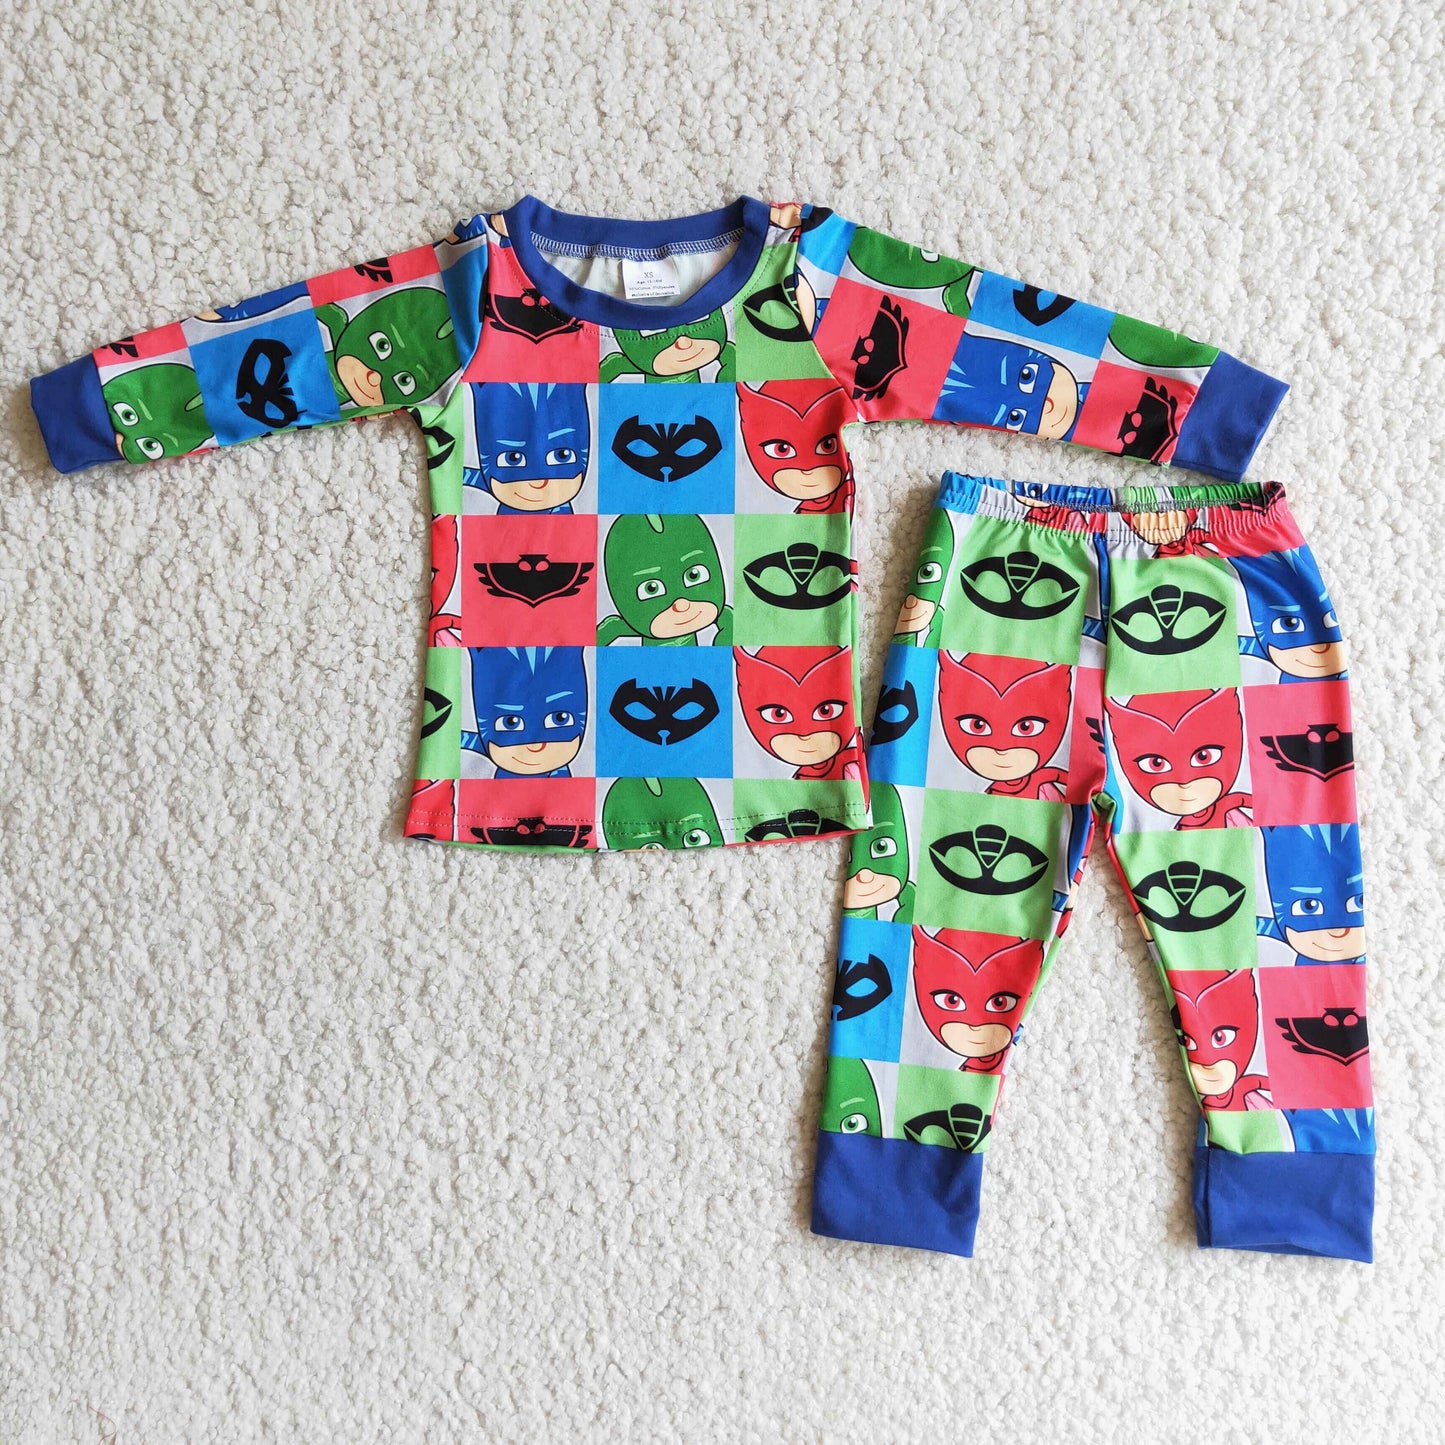 Boys pajama set